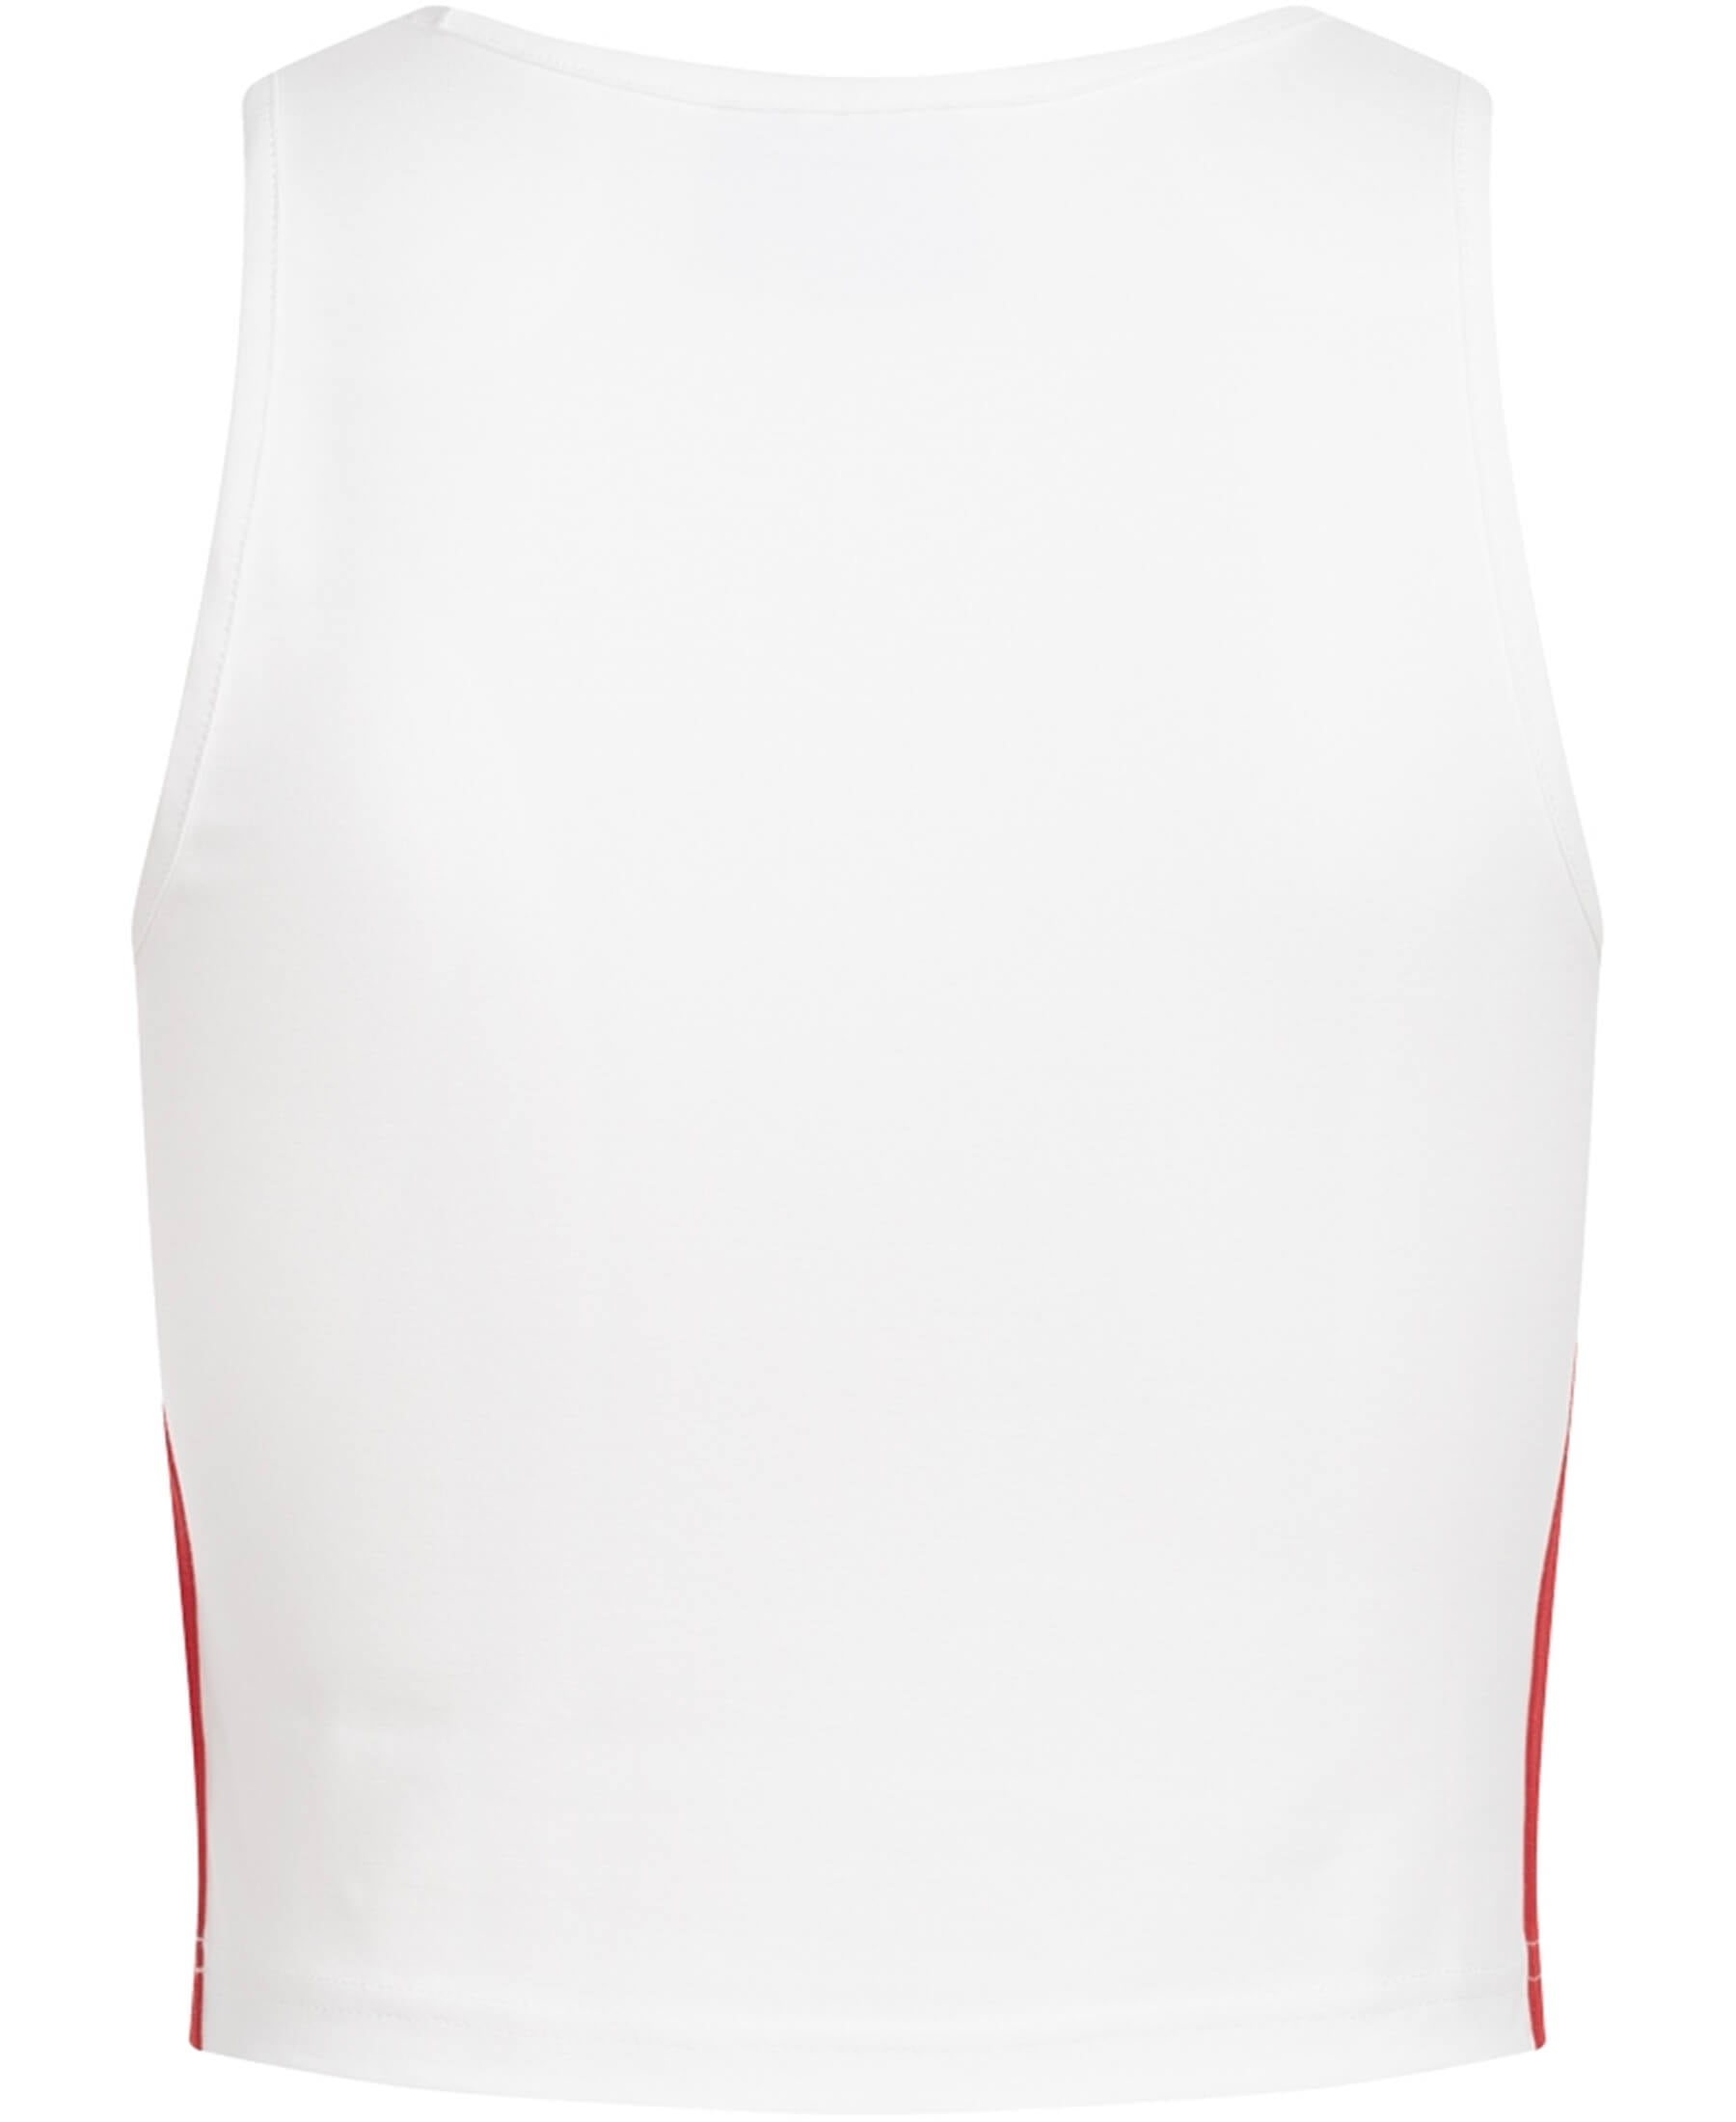 Das Adidas Originals 3-Stripes England Cropped Damen Tank Top (GP1918) vereint Stil und Komfort. Zeigen Sie Ihre Verbundenheit mit diesem modischen Oberteil, das perfekt für sportliche Aktivitäten oder Freizeitoutfits geeignet ist. Mit seinem ikonischen Design und hochwertiger Verarbeitung ist dieses Tank Top ein Muss. Erhältlich bei SHOP4TEAMSPORT - Ihrer Quelle für trendige Sportbekleidung.